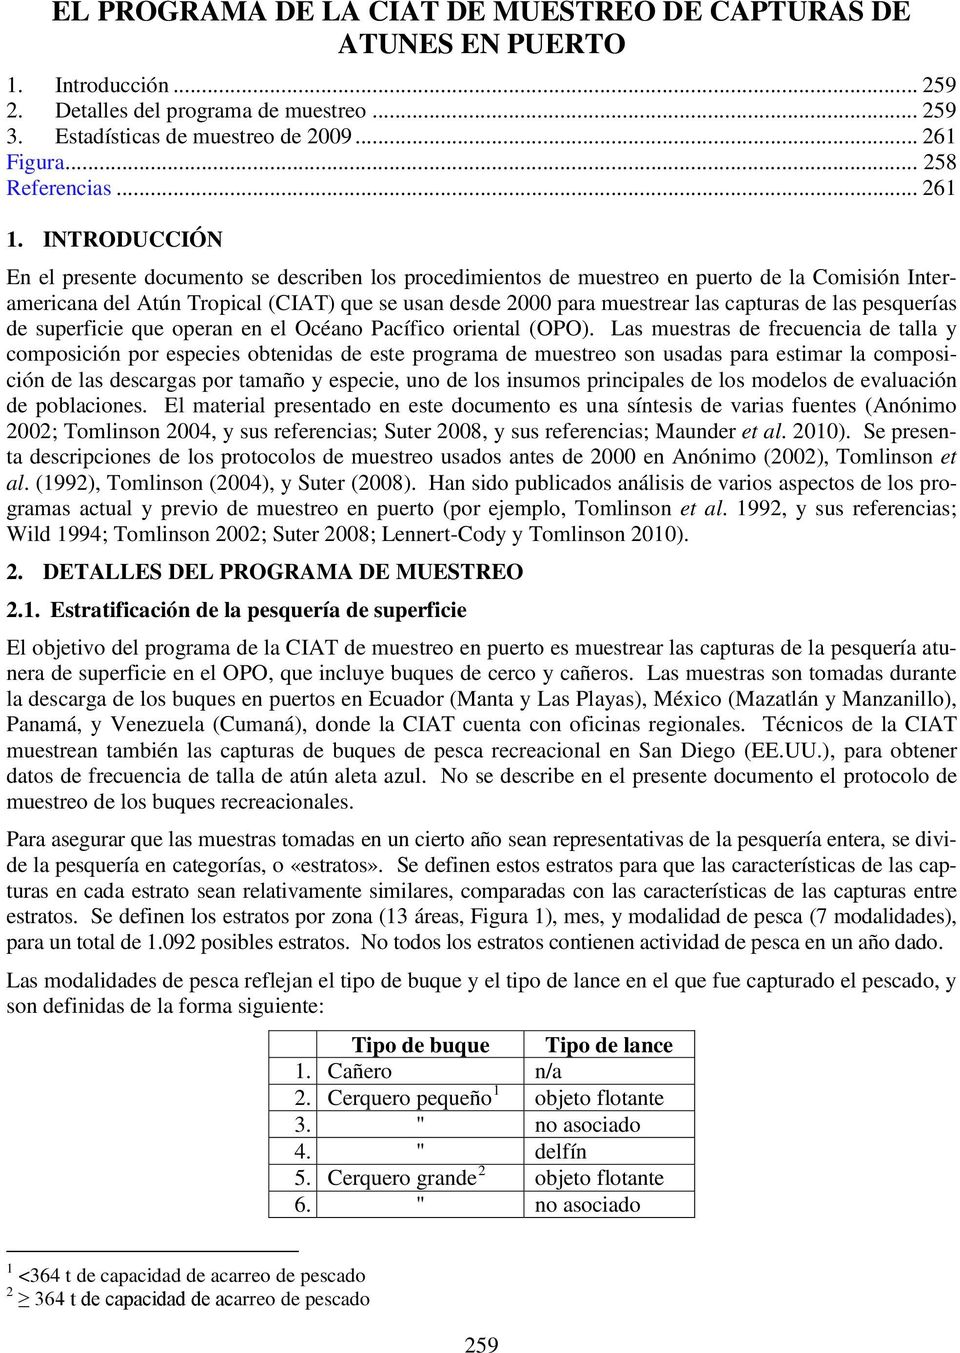 INTRODUCCIÓN En el presente documento se describen los procedimientos de muestreo en puerto de la Comisión Interamericana del Atún Tropical (CIAT) que se usan desde 2000 para muestrear las capturas